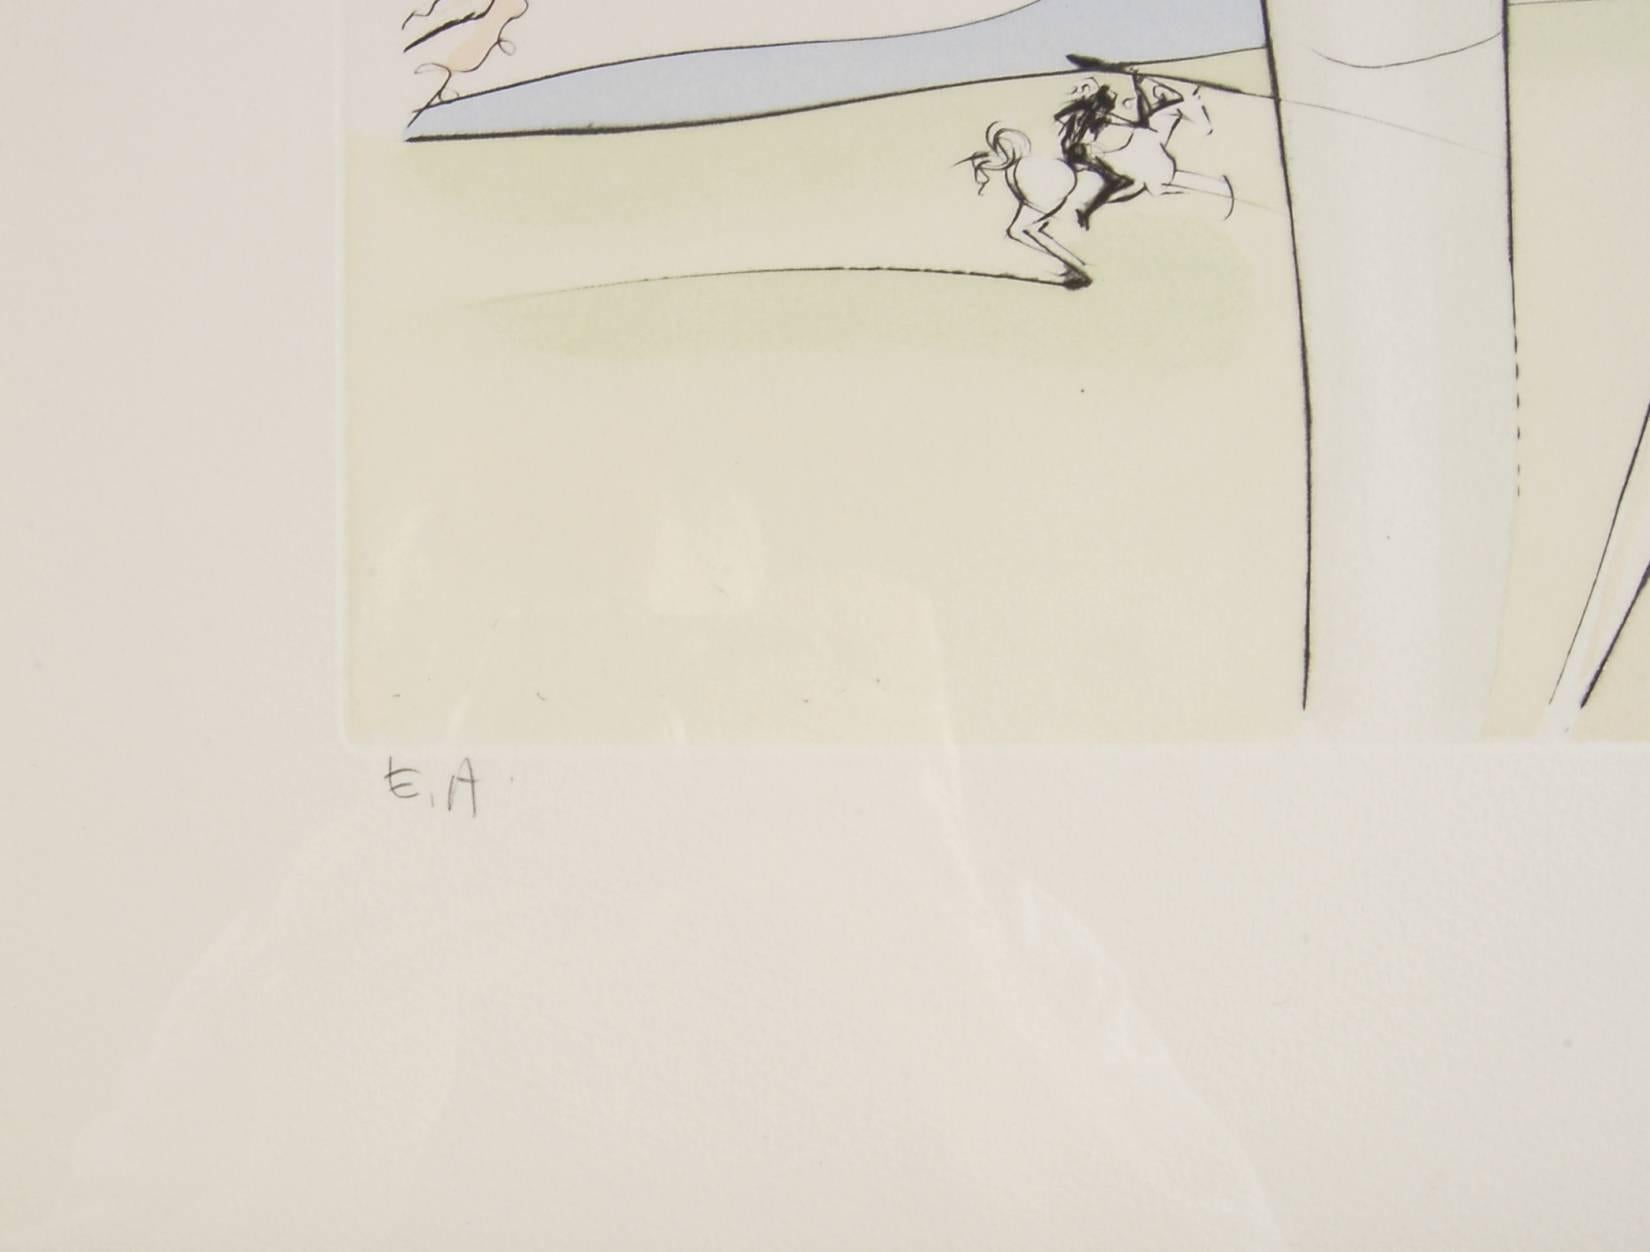 Künstler:	Salvador Dali (spanischer Surrealist, 1904-1989)
Titel:	Die Singe und der Leopard
Jahr:	1976
Medium:	Gravur mit Handfarbschablone
Auflage:	Eingeschrieben E.A
Papier:	Bögen
Bildgröße: 22,5 x 15,5 Zoll
Papierformat: 30,75 x 23